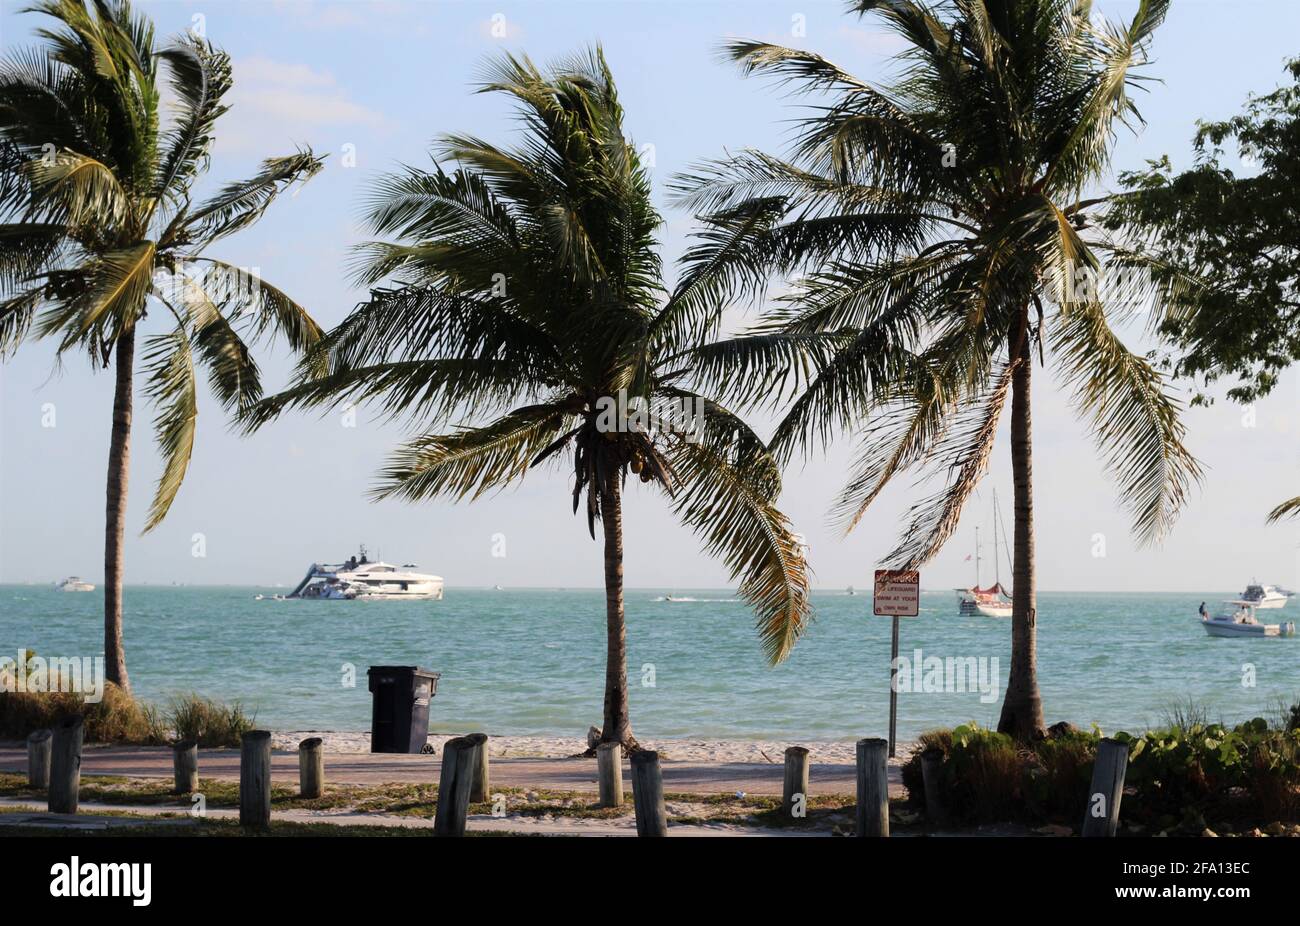 Schöner sonniger Tag in Key Biscayne, Florida. Große Palmen mit Meereshintergrund. Blick auf die Straße. Stockfoto